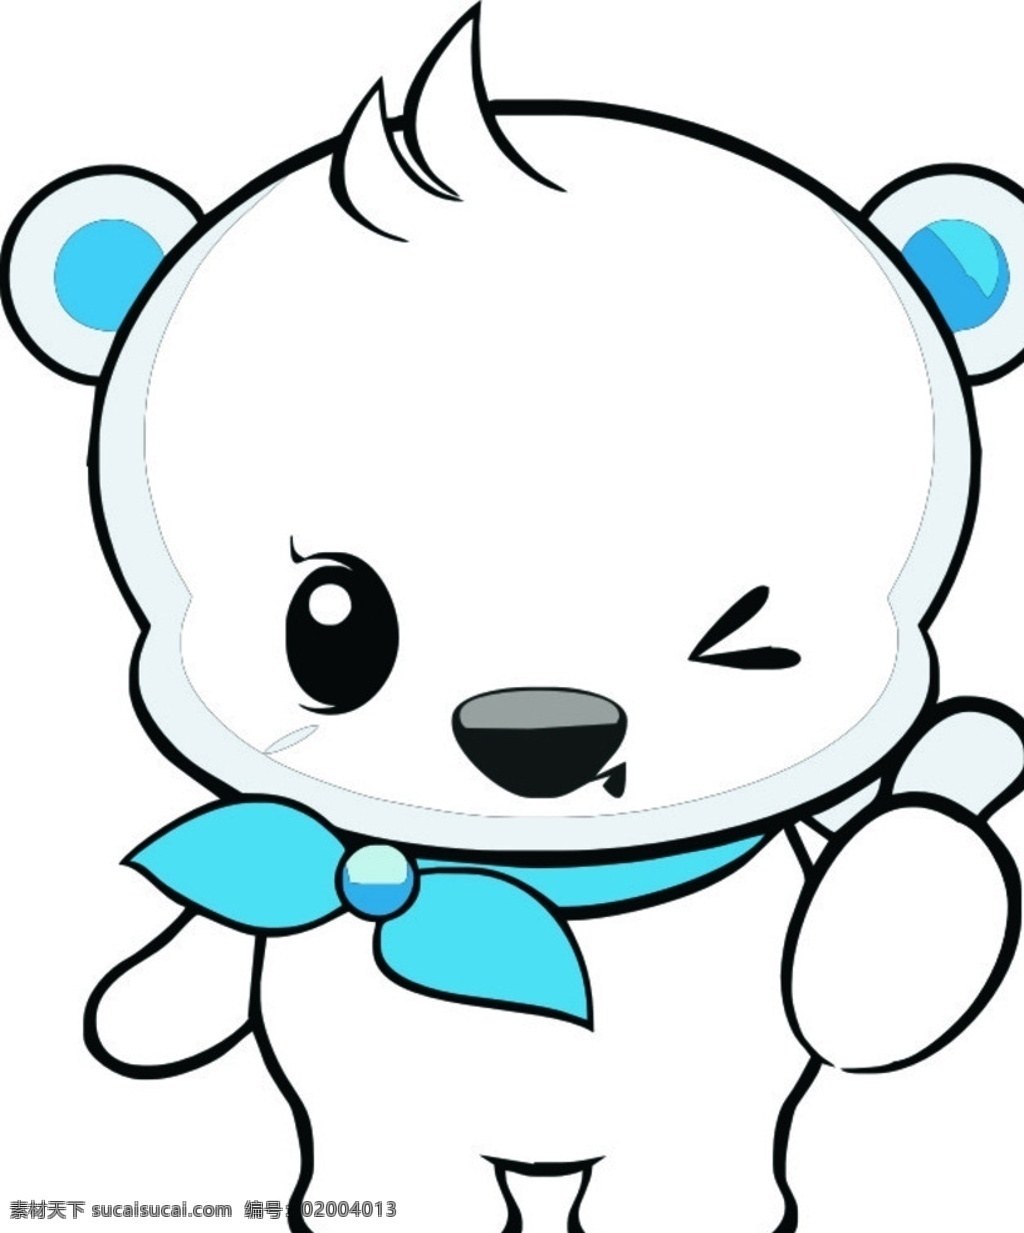 白色 眨眼 竖指 熊 可爱 丝巾 卡通 北极熊 蓝色 卡通类